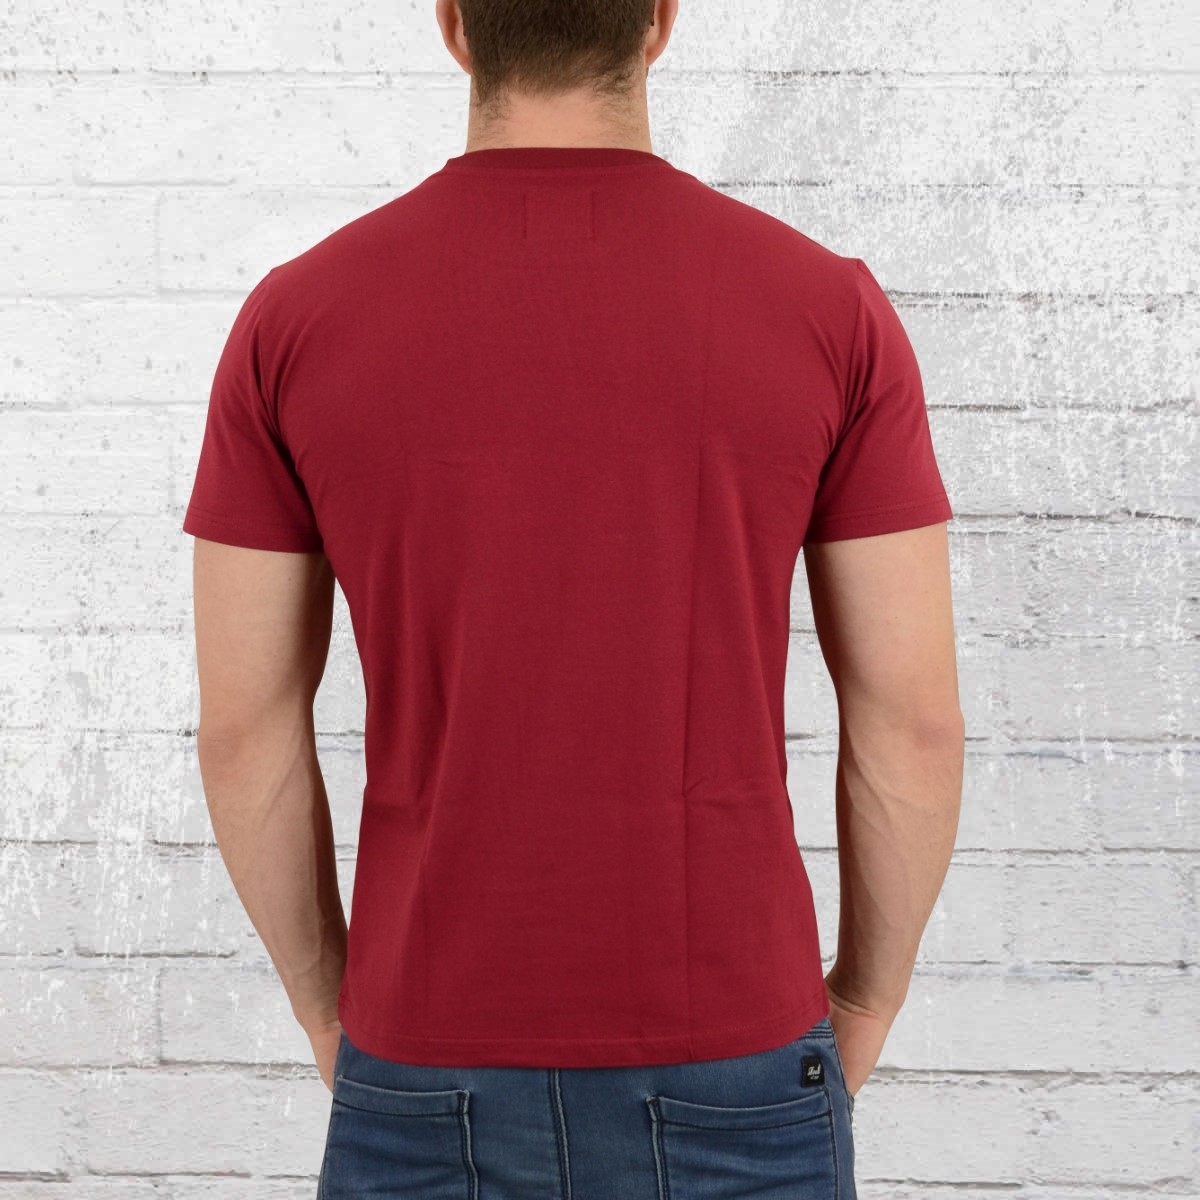 Order now | PG Wear T-Shirt Men Stadium Banned dark red maroon